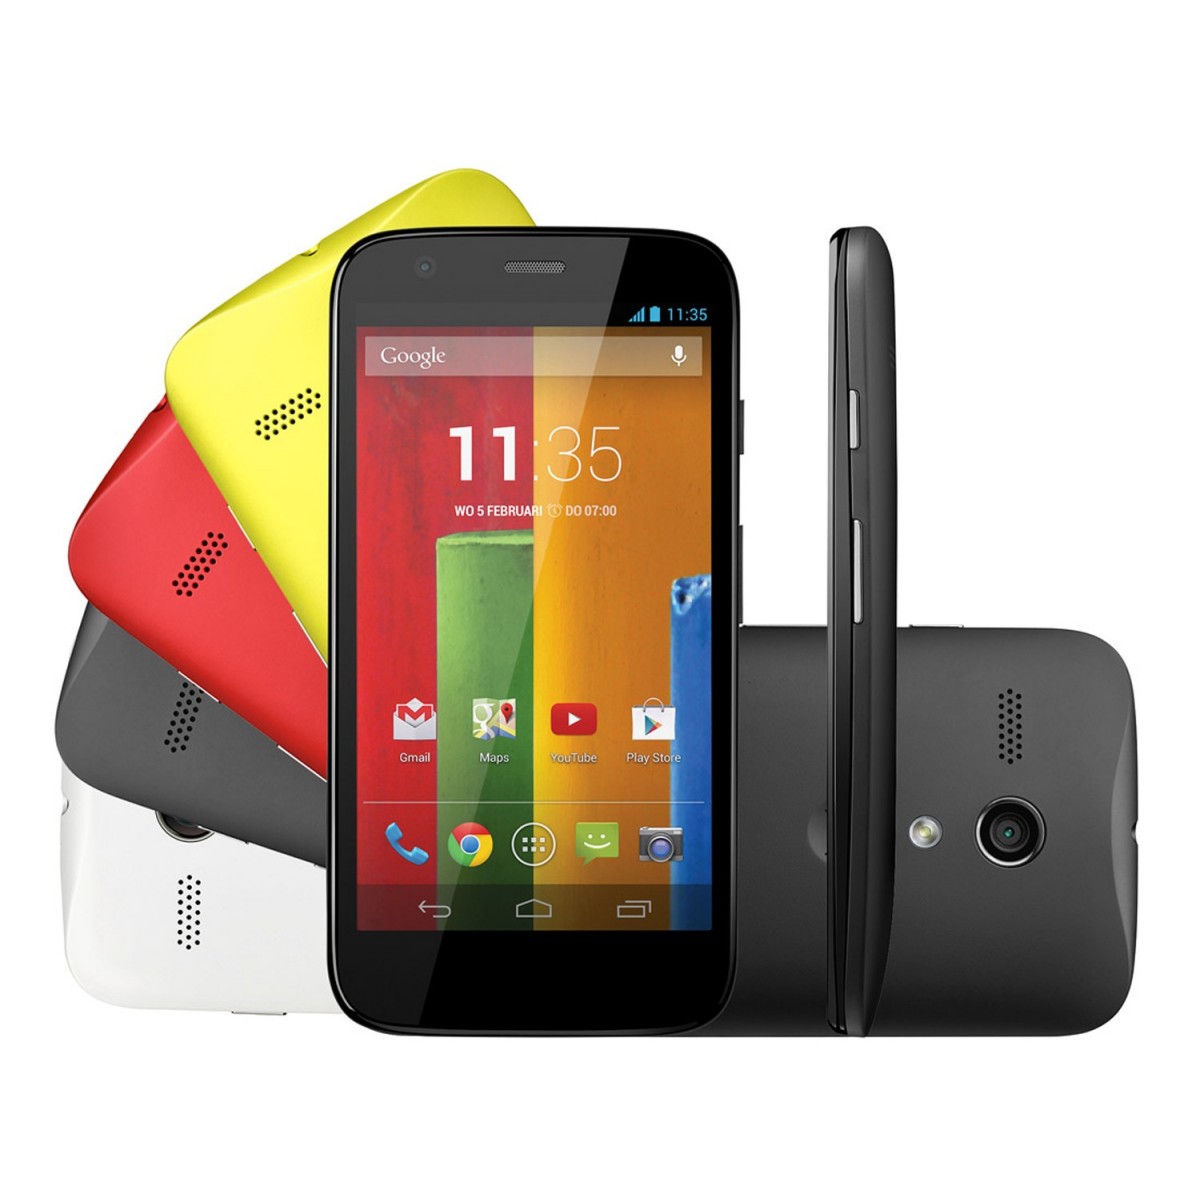 Smartphone Moto G XT1033, 3G, Android 4.3, Camera 5MP, 16GB, Processador Quad Core 1.2Ghz